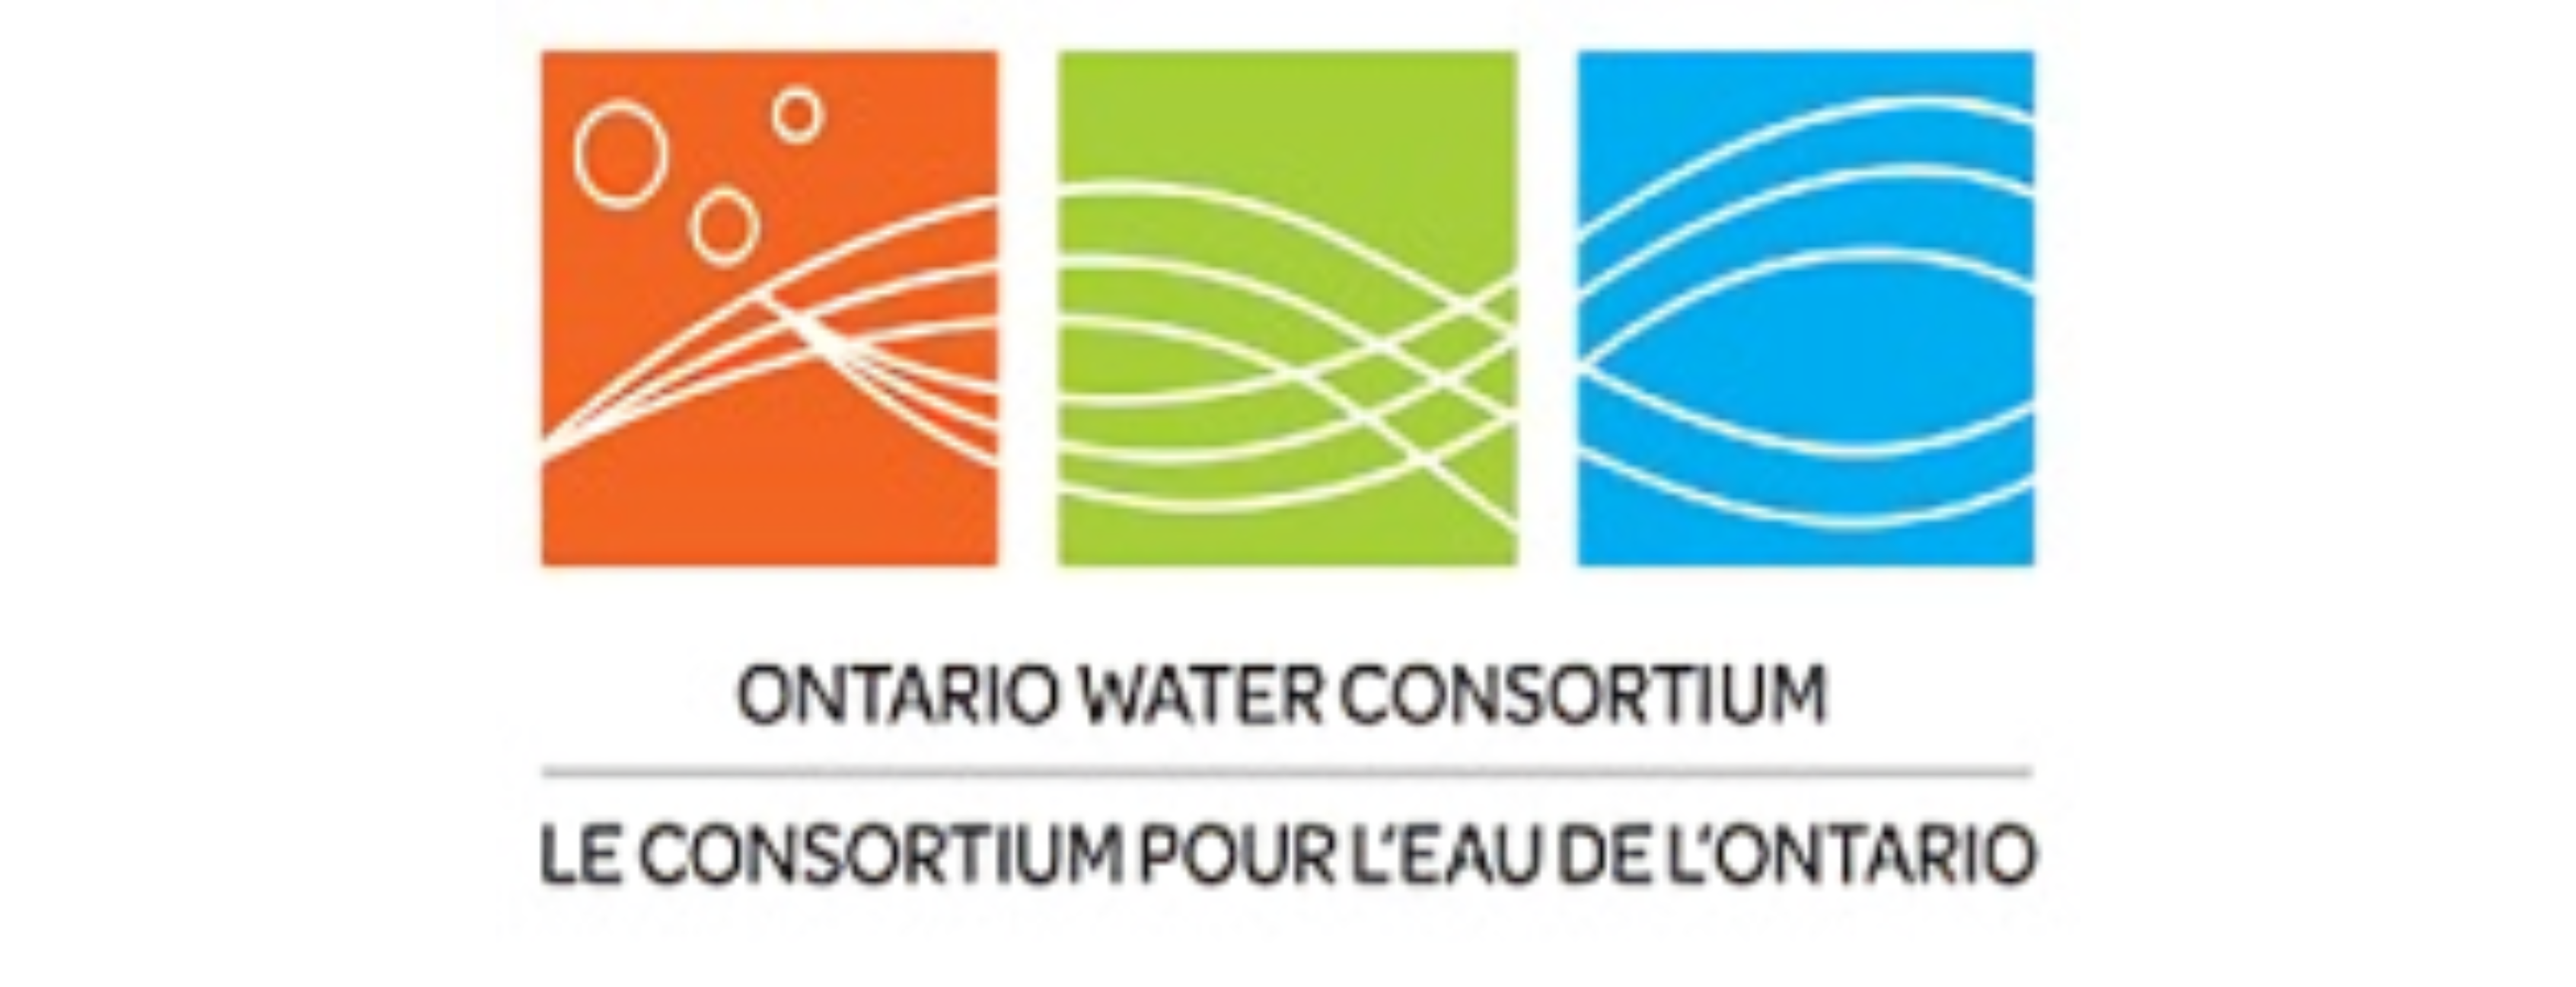 TRITON® Partnership with Ontario Water Consortium